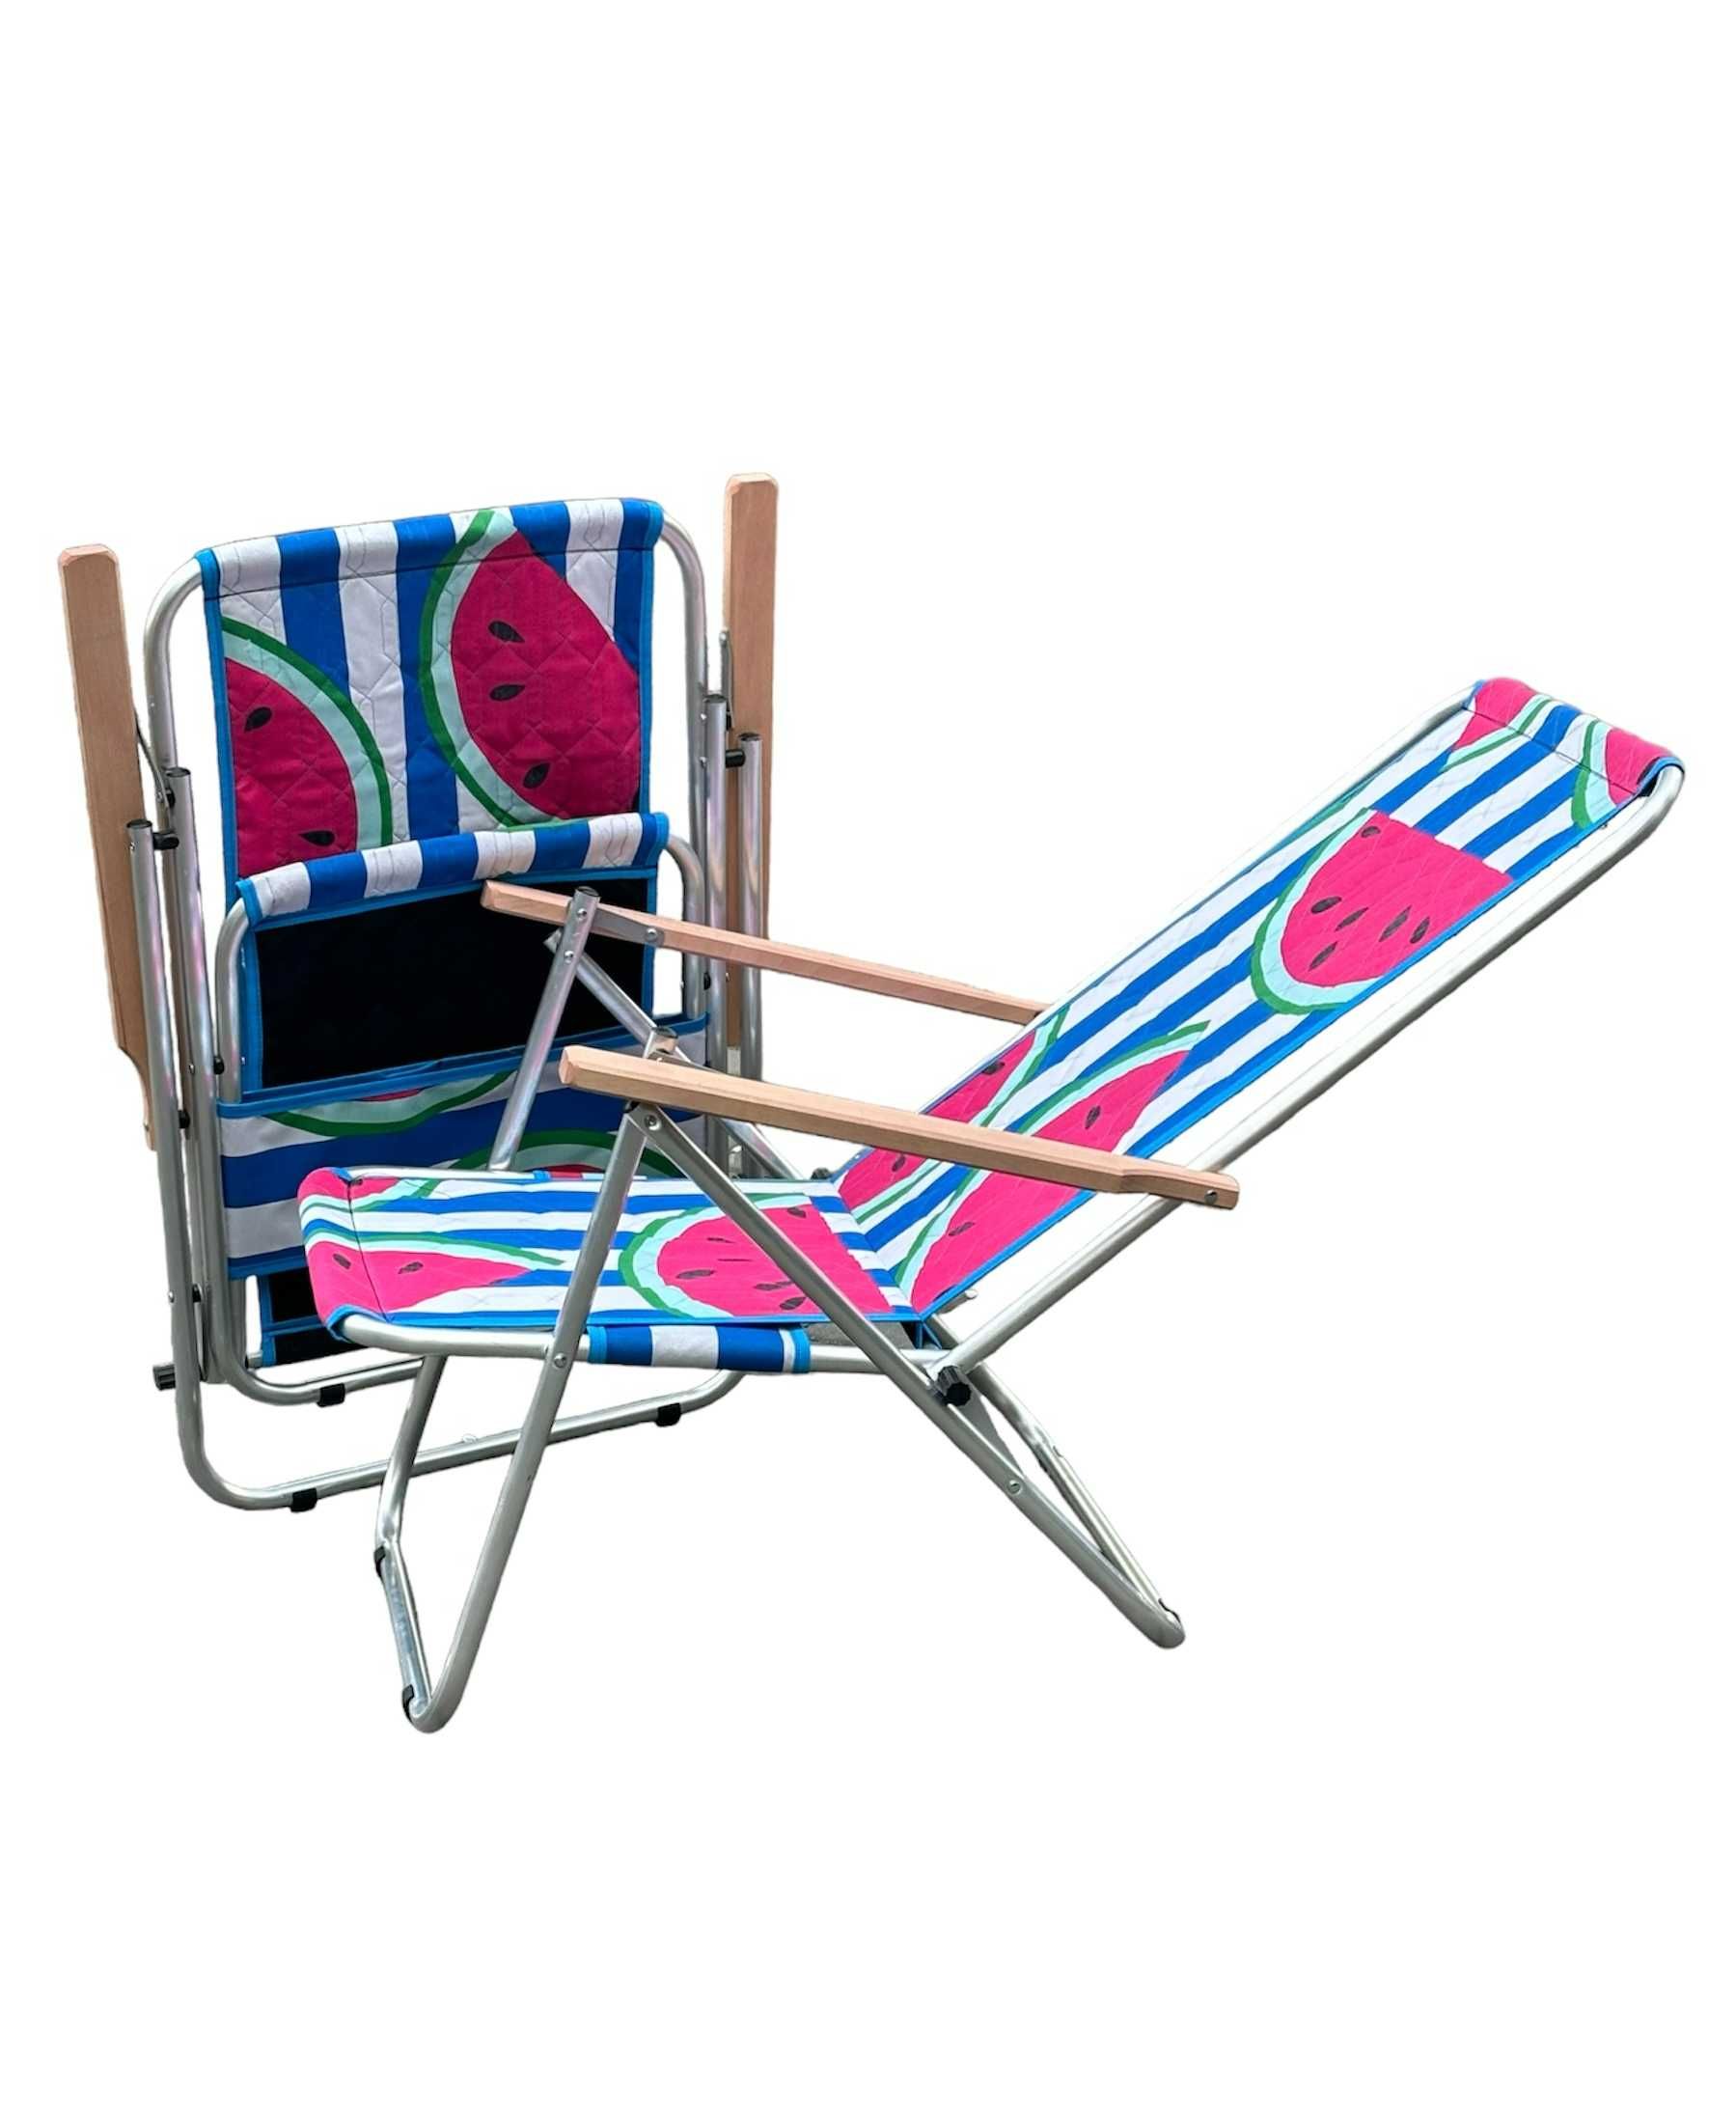 Leżak dwu pozycyjny aluminiowy plażowy, ogrodowy, krzesło 120 kg lekki